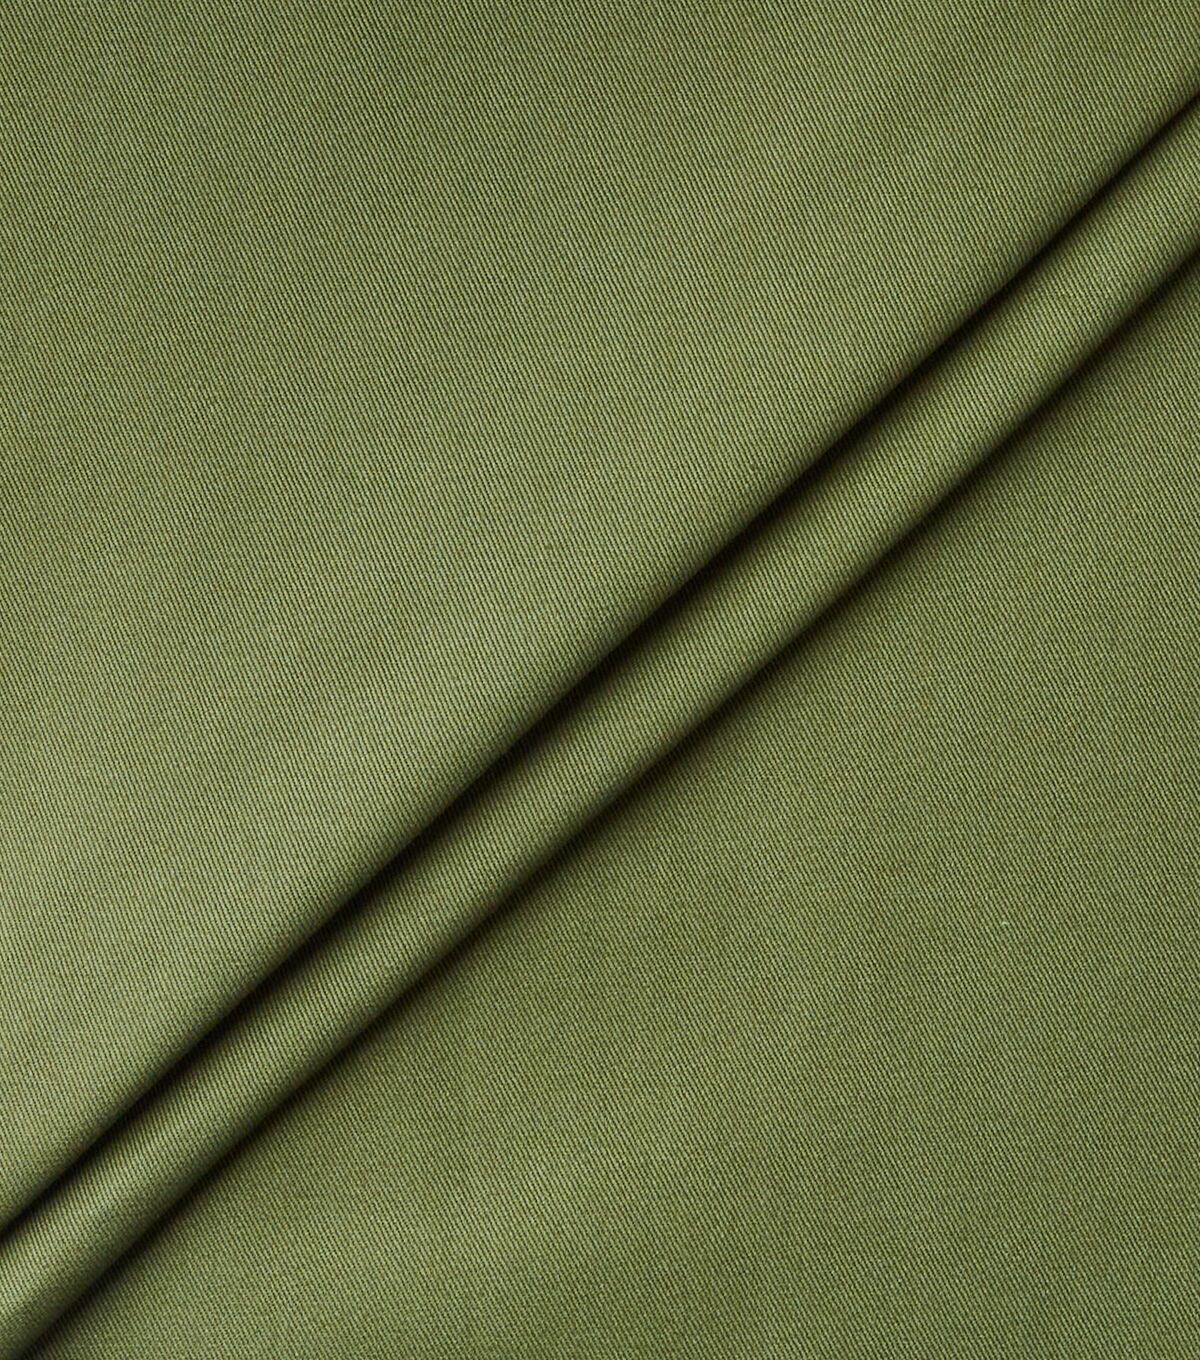 Eddie Bauer Green Tough Cotton Twill Fabric